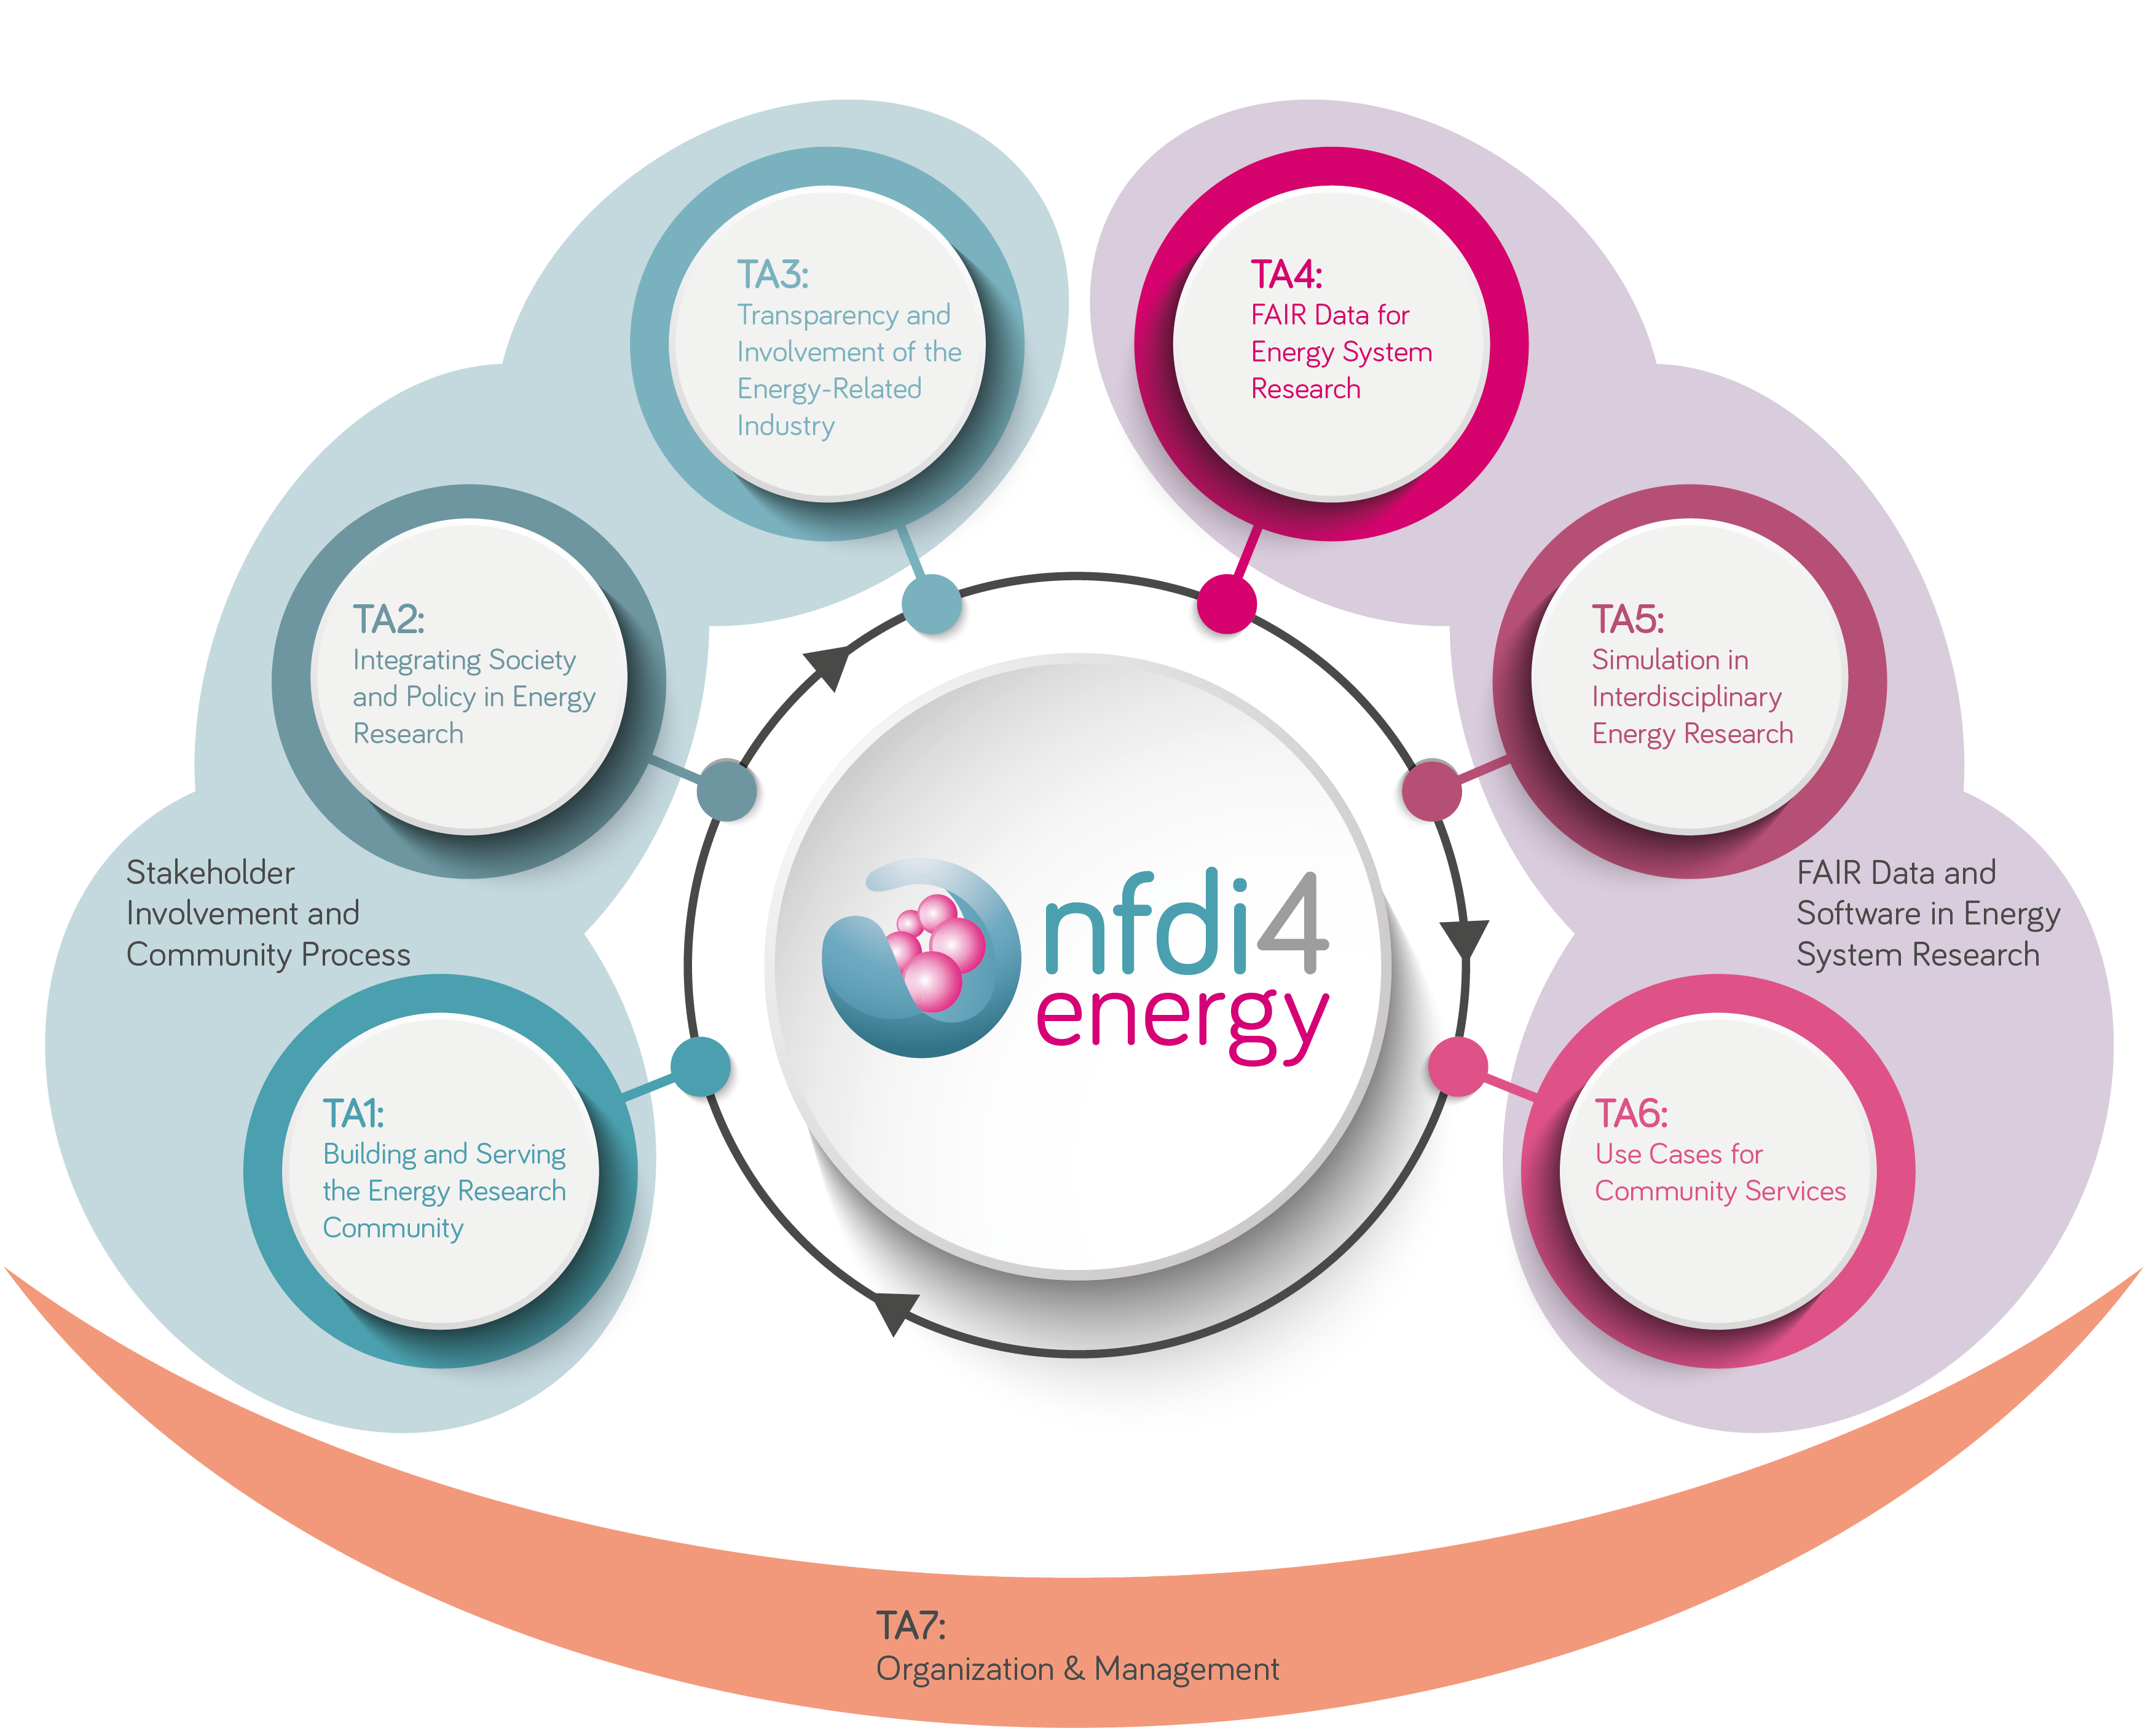 Task Areas of the NFDI4Energy consortium